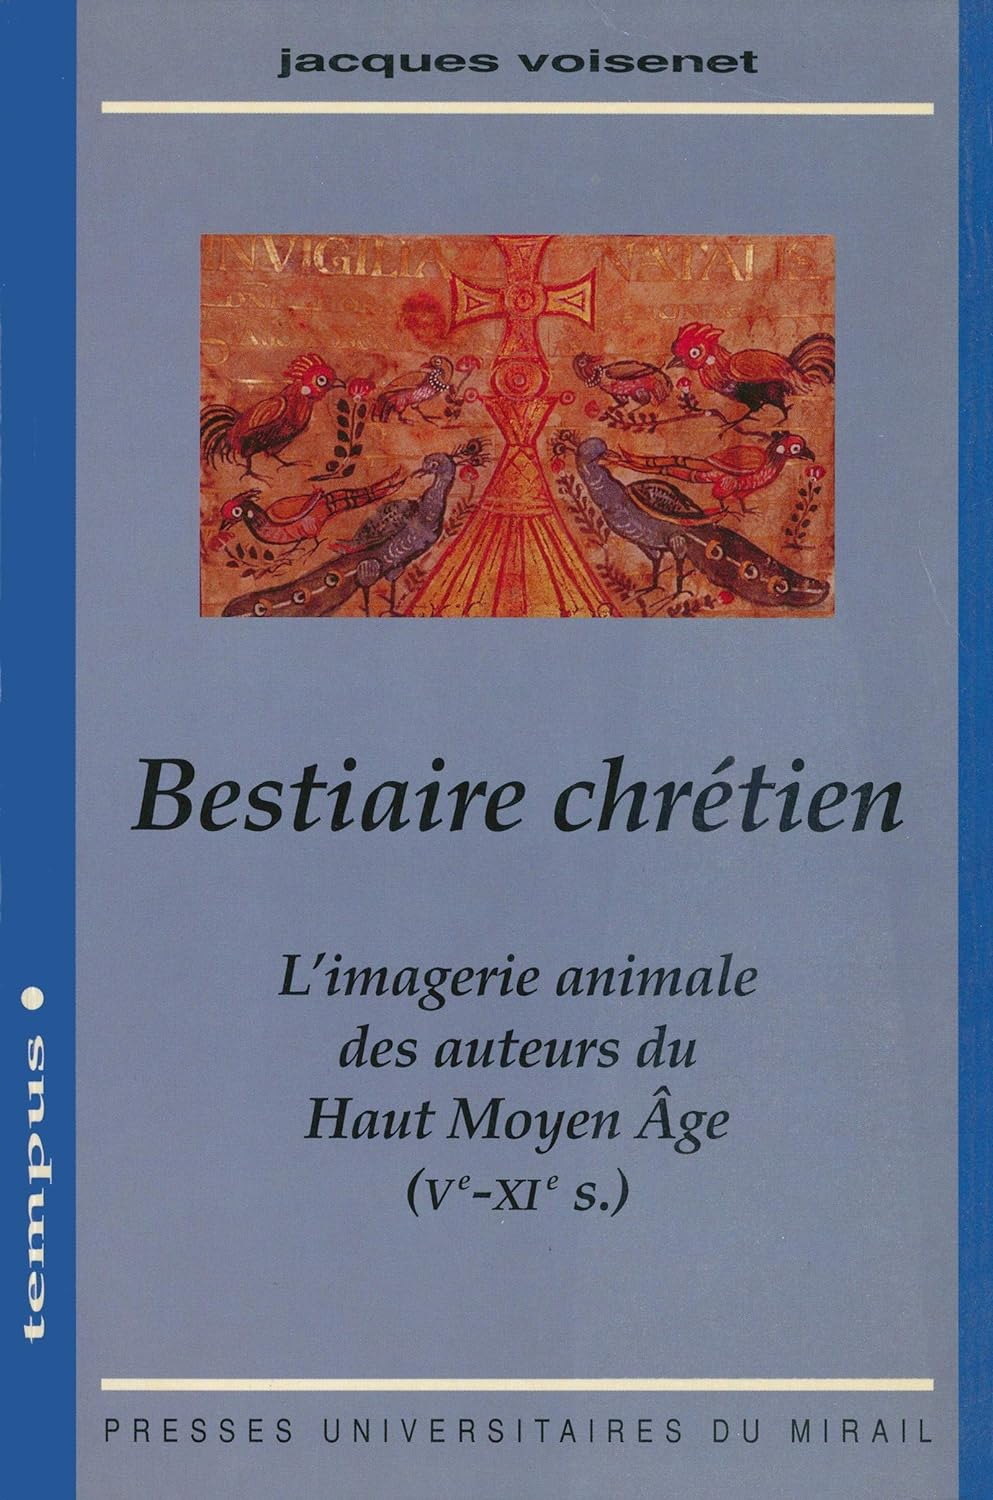 Jacques Voisenet, "Bestiaire chrétien: L’imagerie animale des auteurs du Haut Moyen Âge (Ve-XIe siècles)"